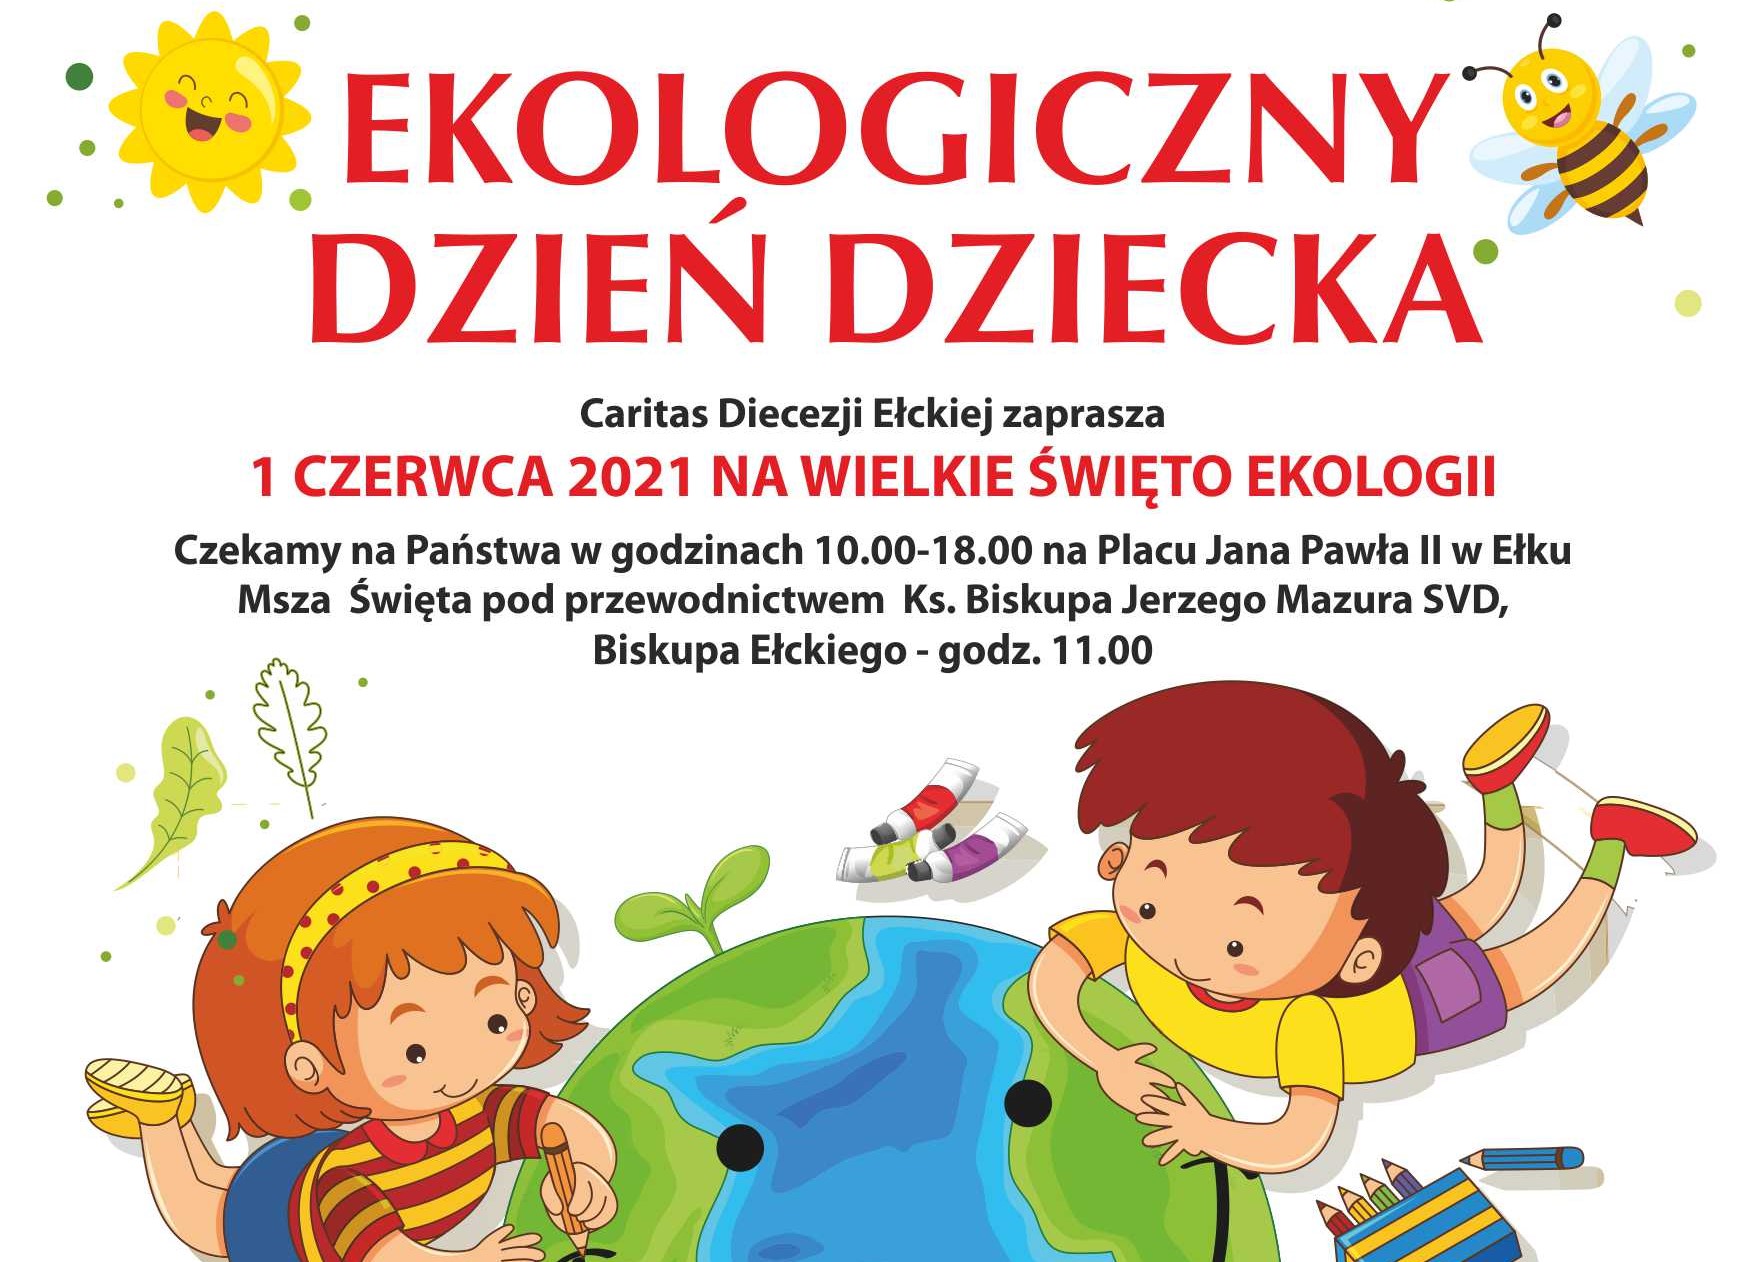 Ekologiczny Dzień Dziecka w Ełku